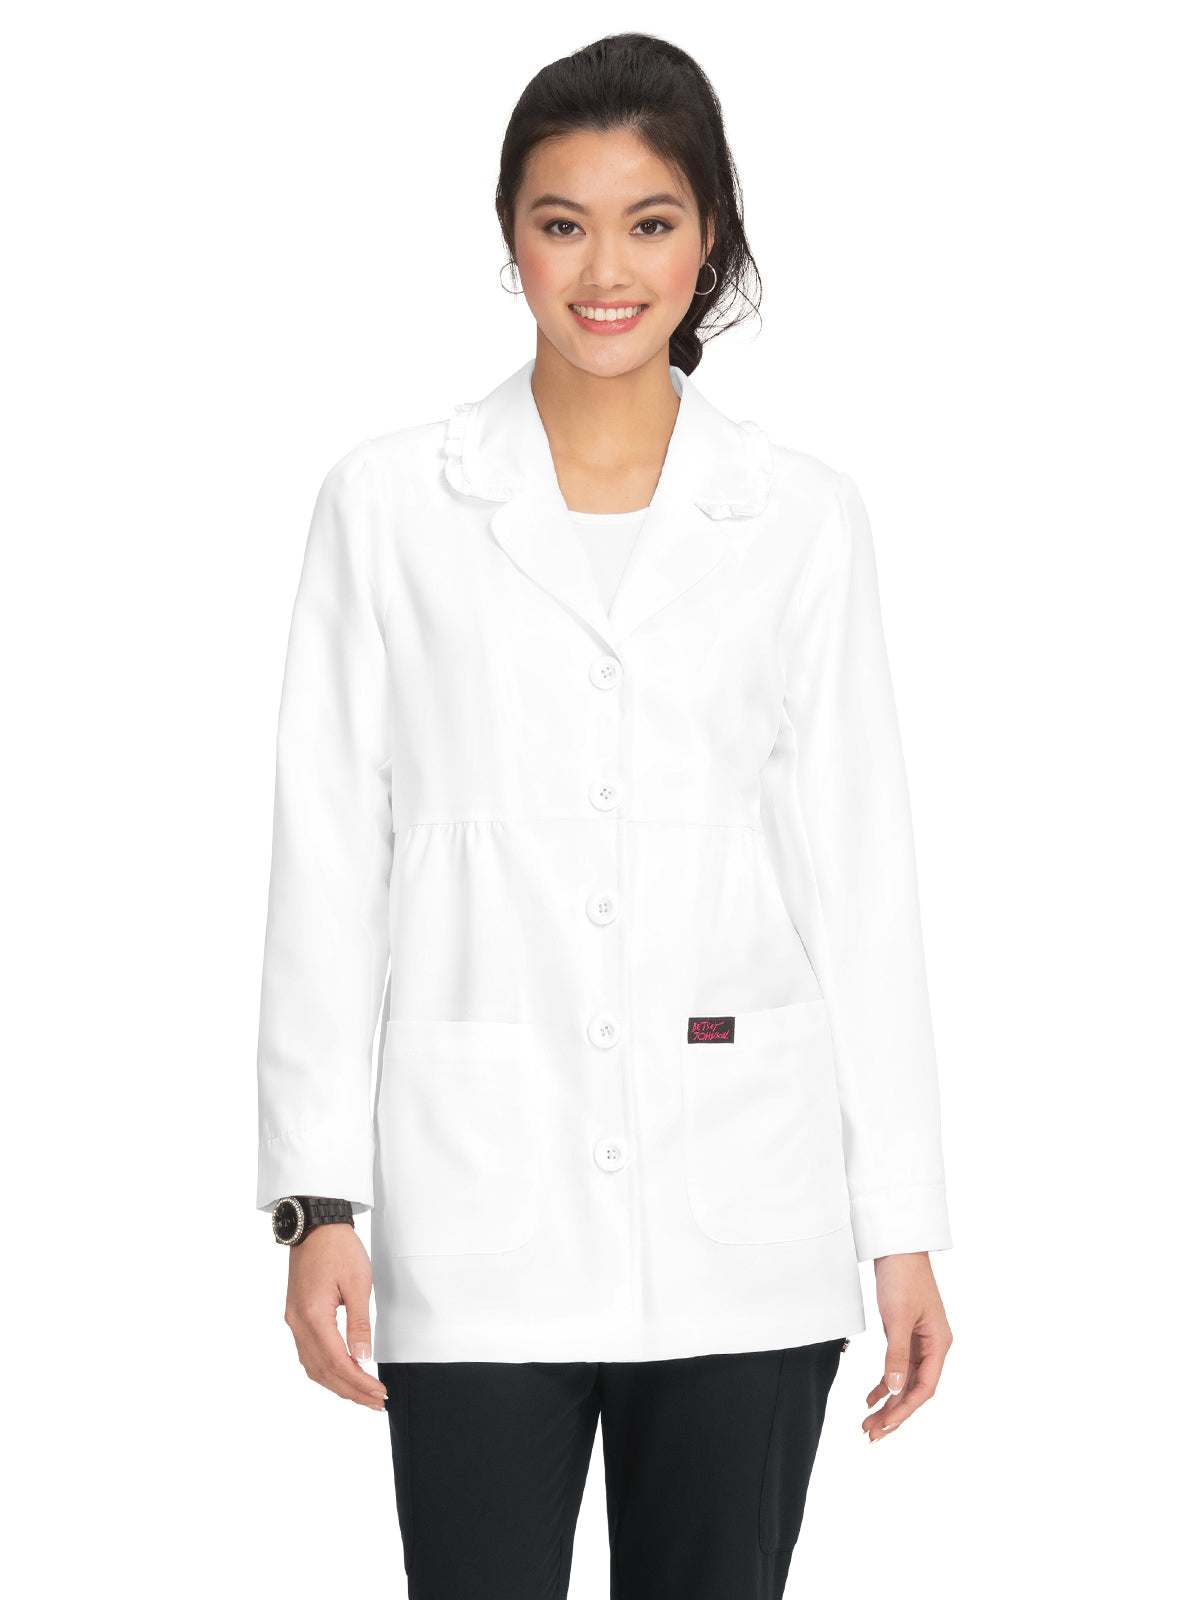 Women's Lab Coat - B403 - White